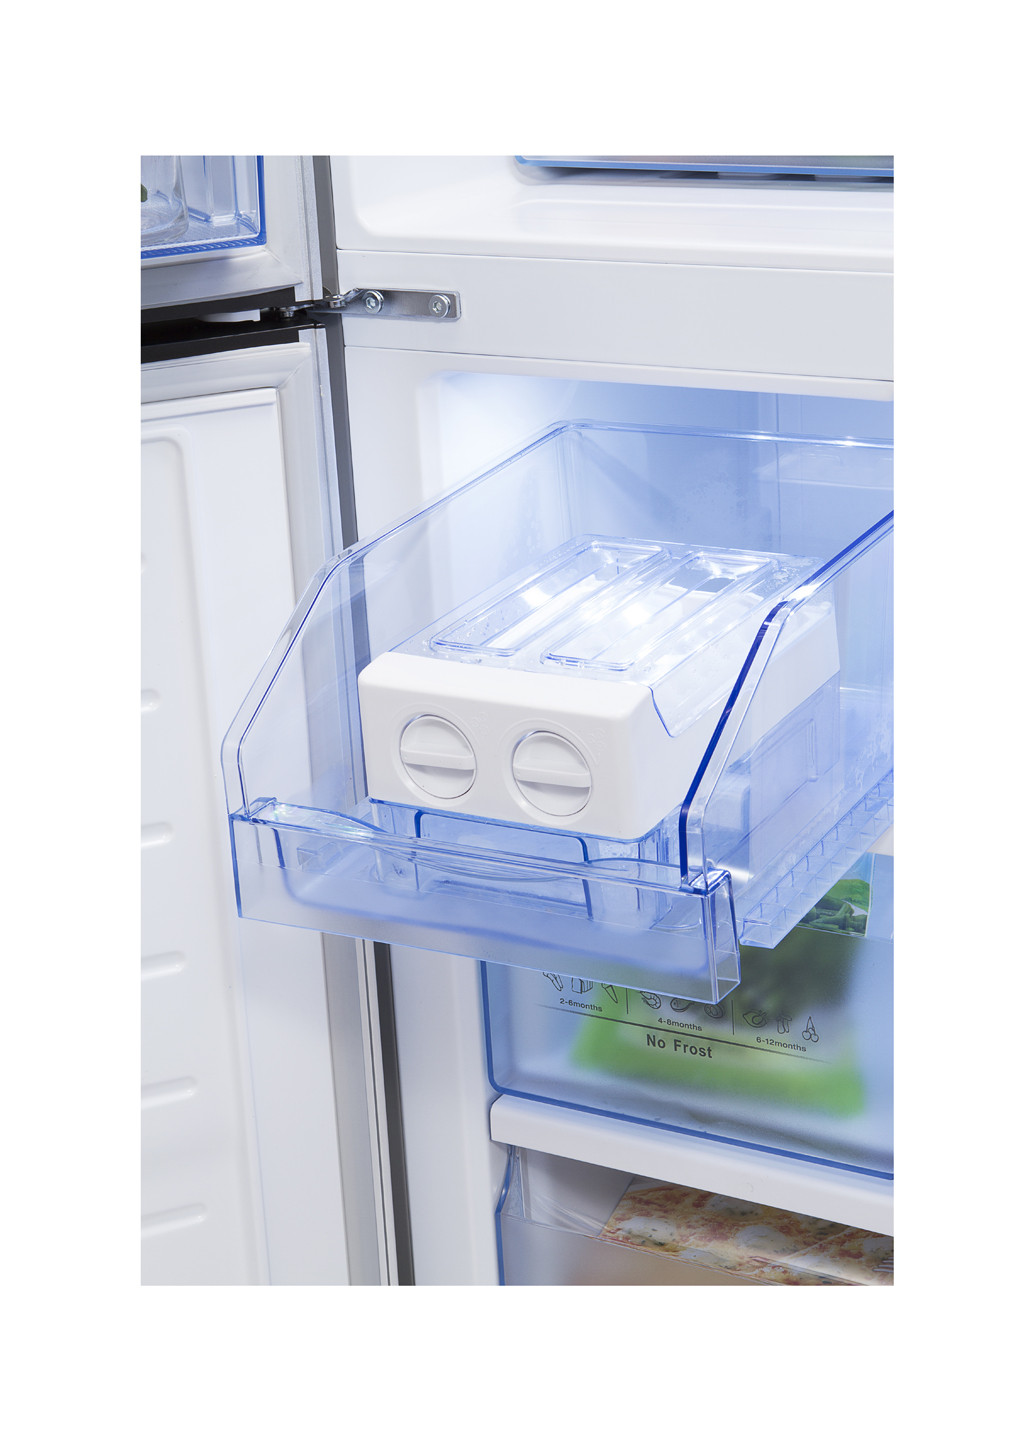 Холодильник RQ-56WC4SHA / CGA1 Hisense rq-56wc4sha/cga1 (131079642)